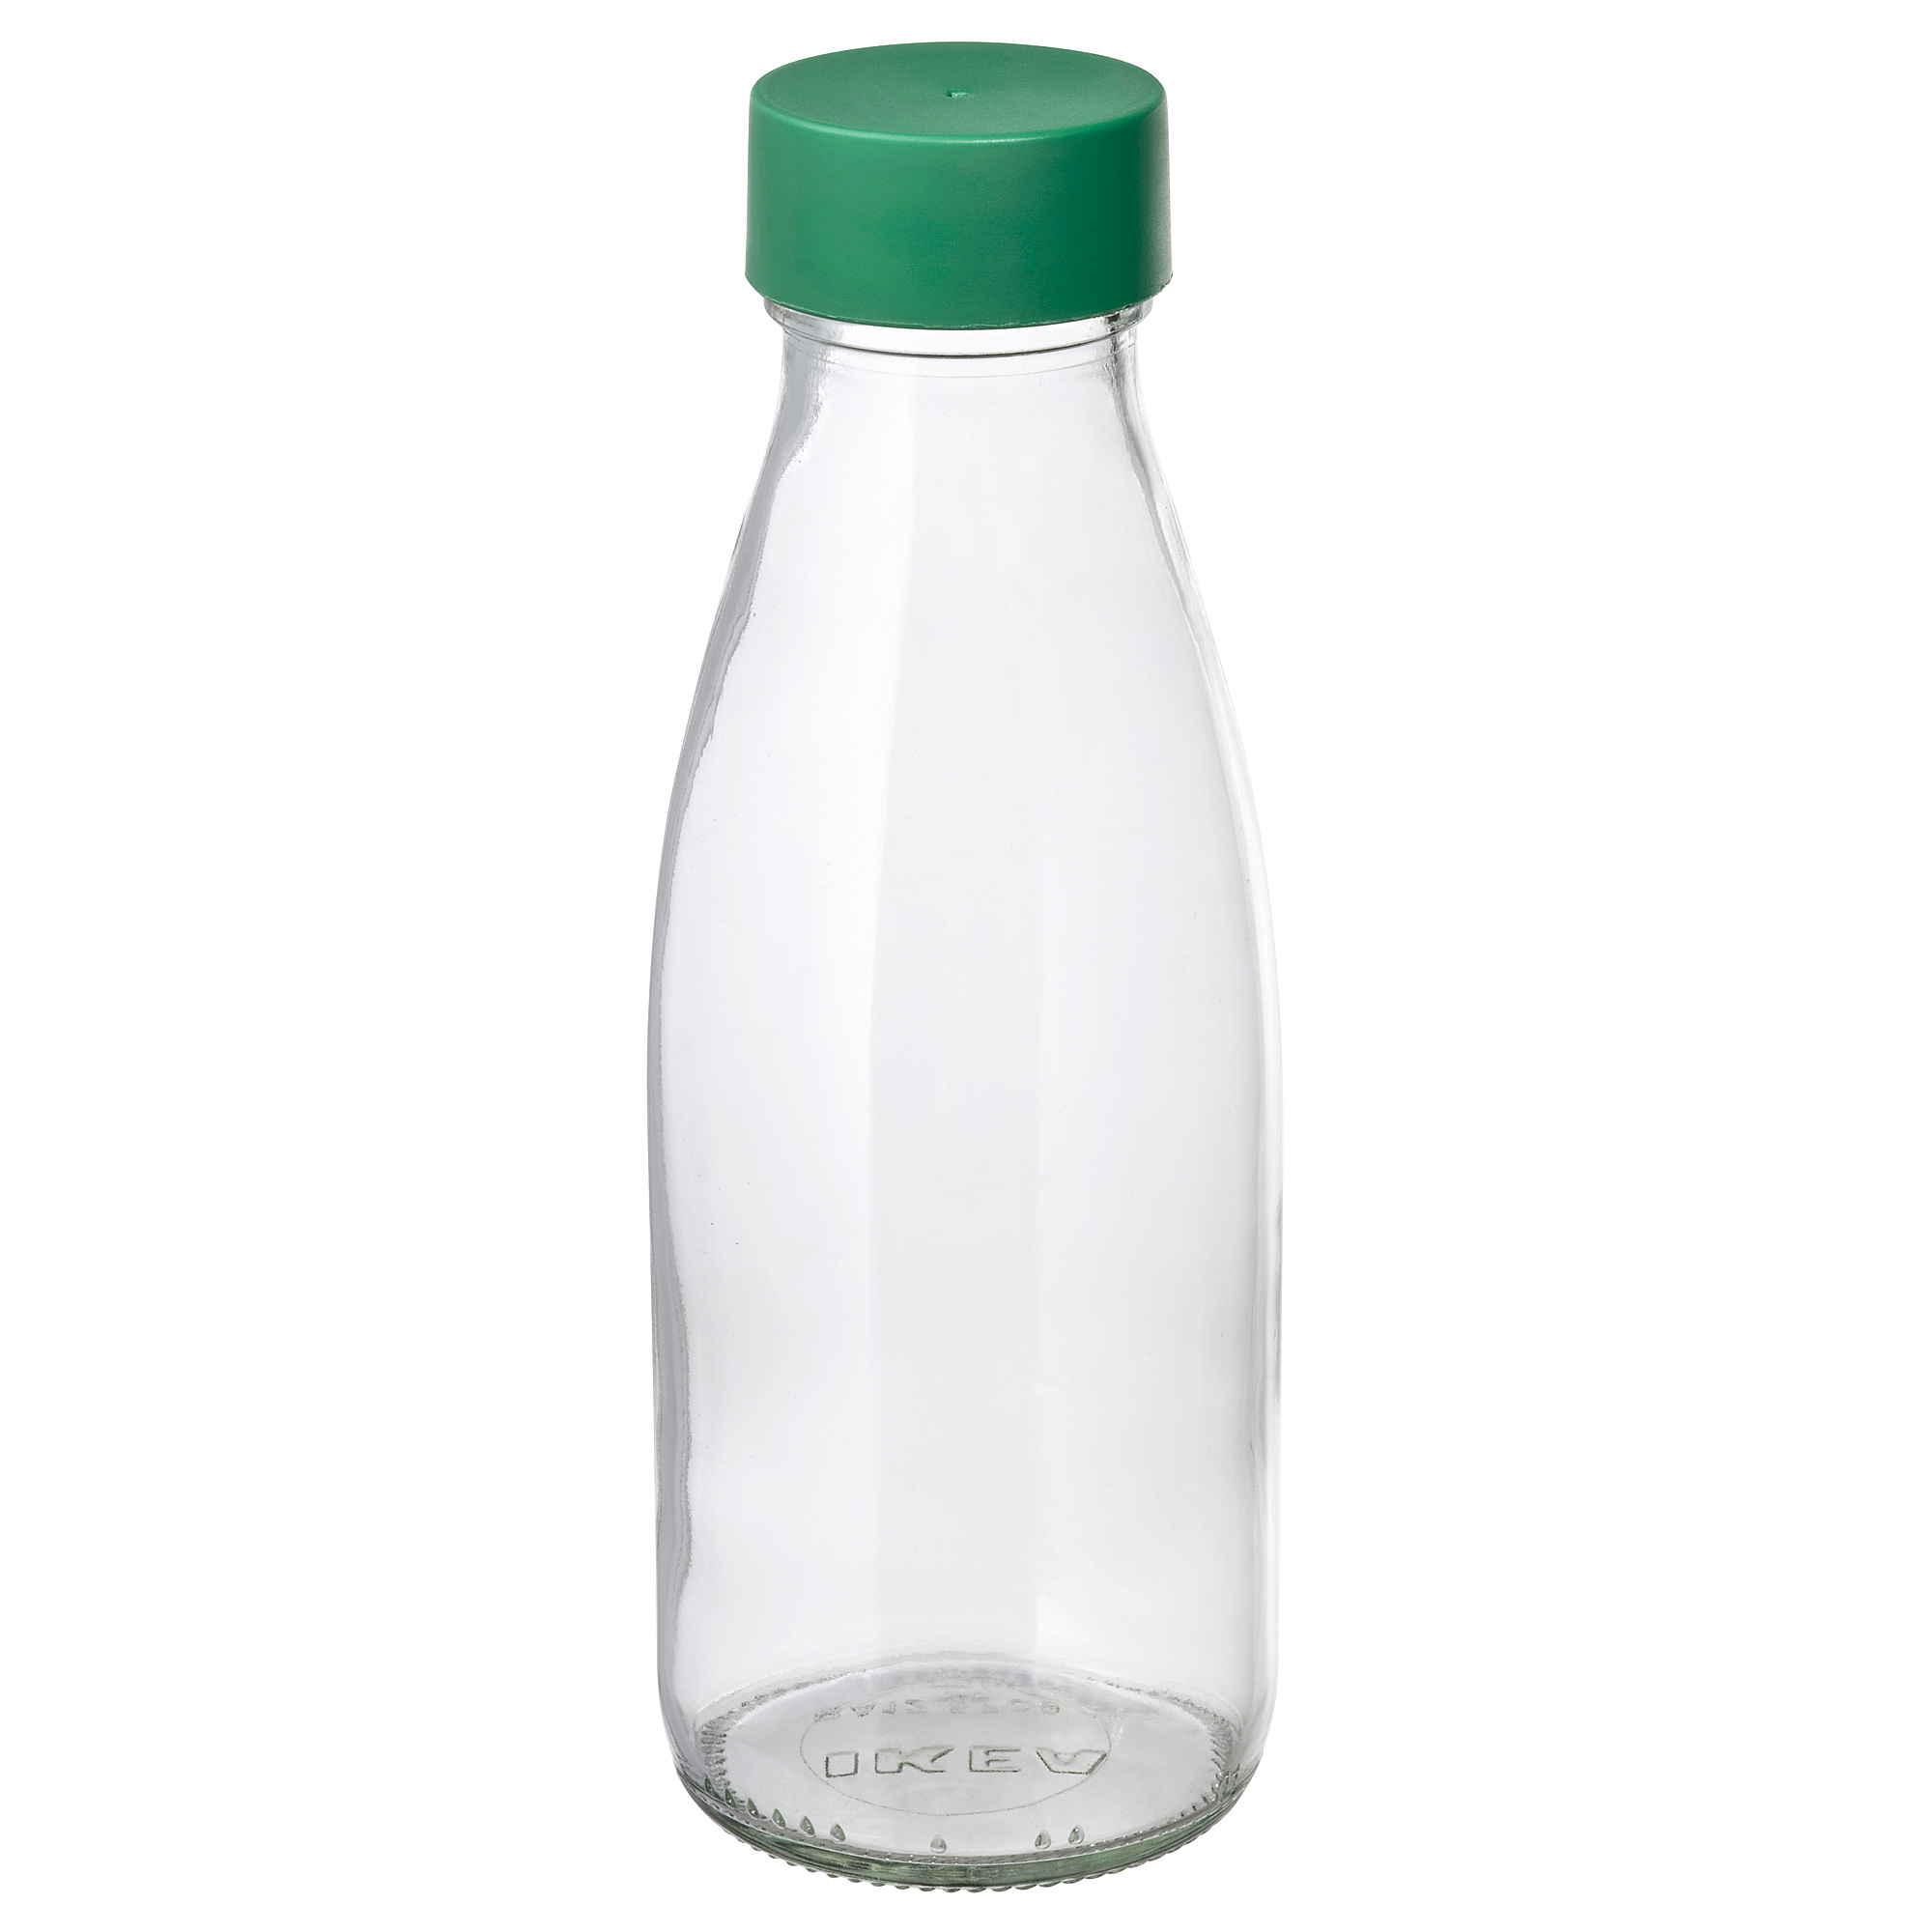 SPARTANSK water bottle